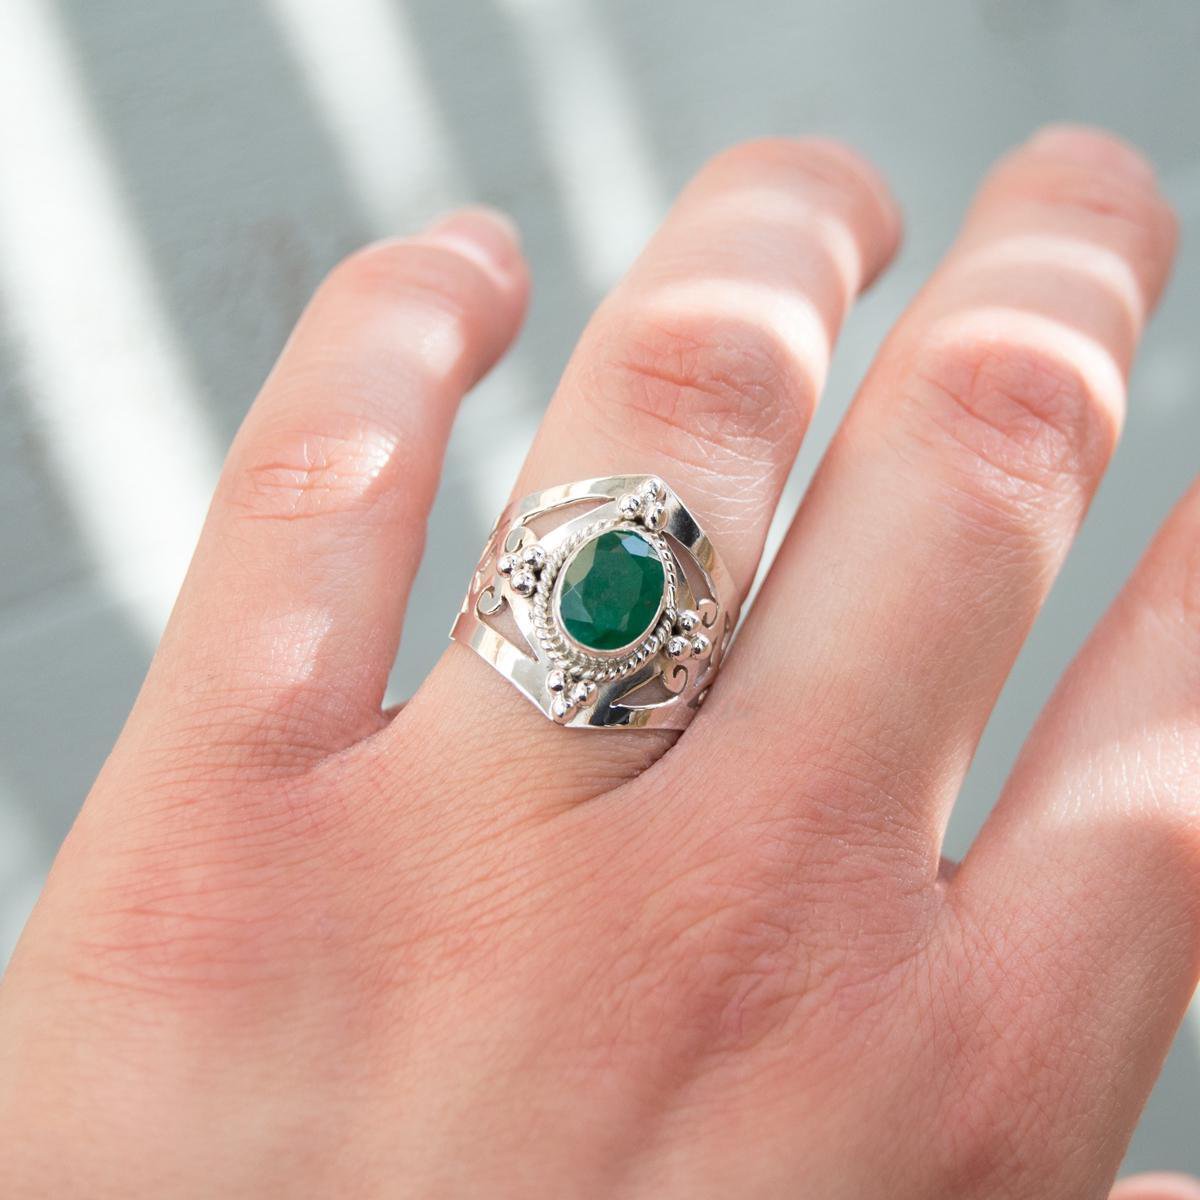 smaragd ringen voor vrouwen Sieraden Ringen Ringen met meerdere stenen sierlijke ring Minimalistische ring 925K zilver met 3 stenen beste vriend verjaardagscadeau voor haar 